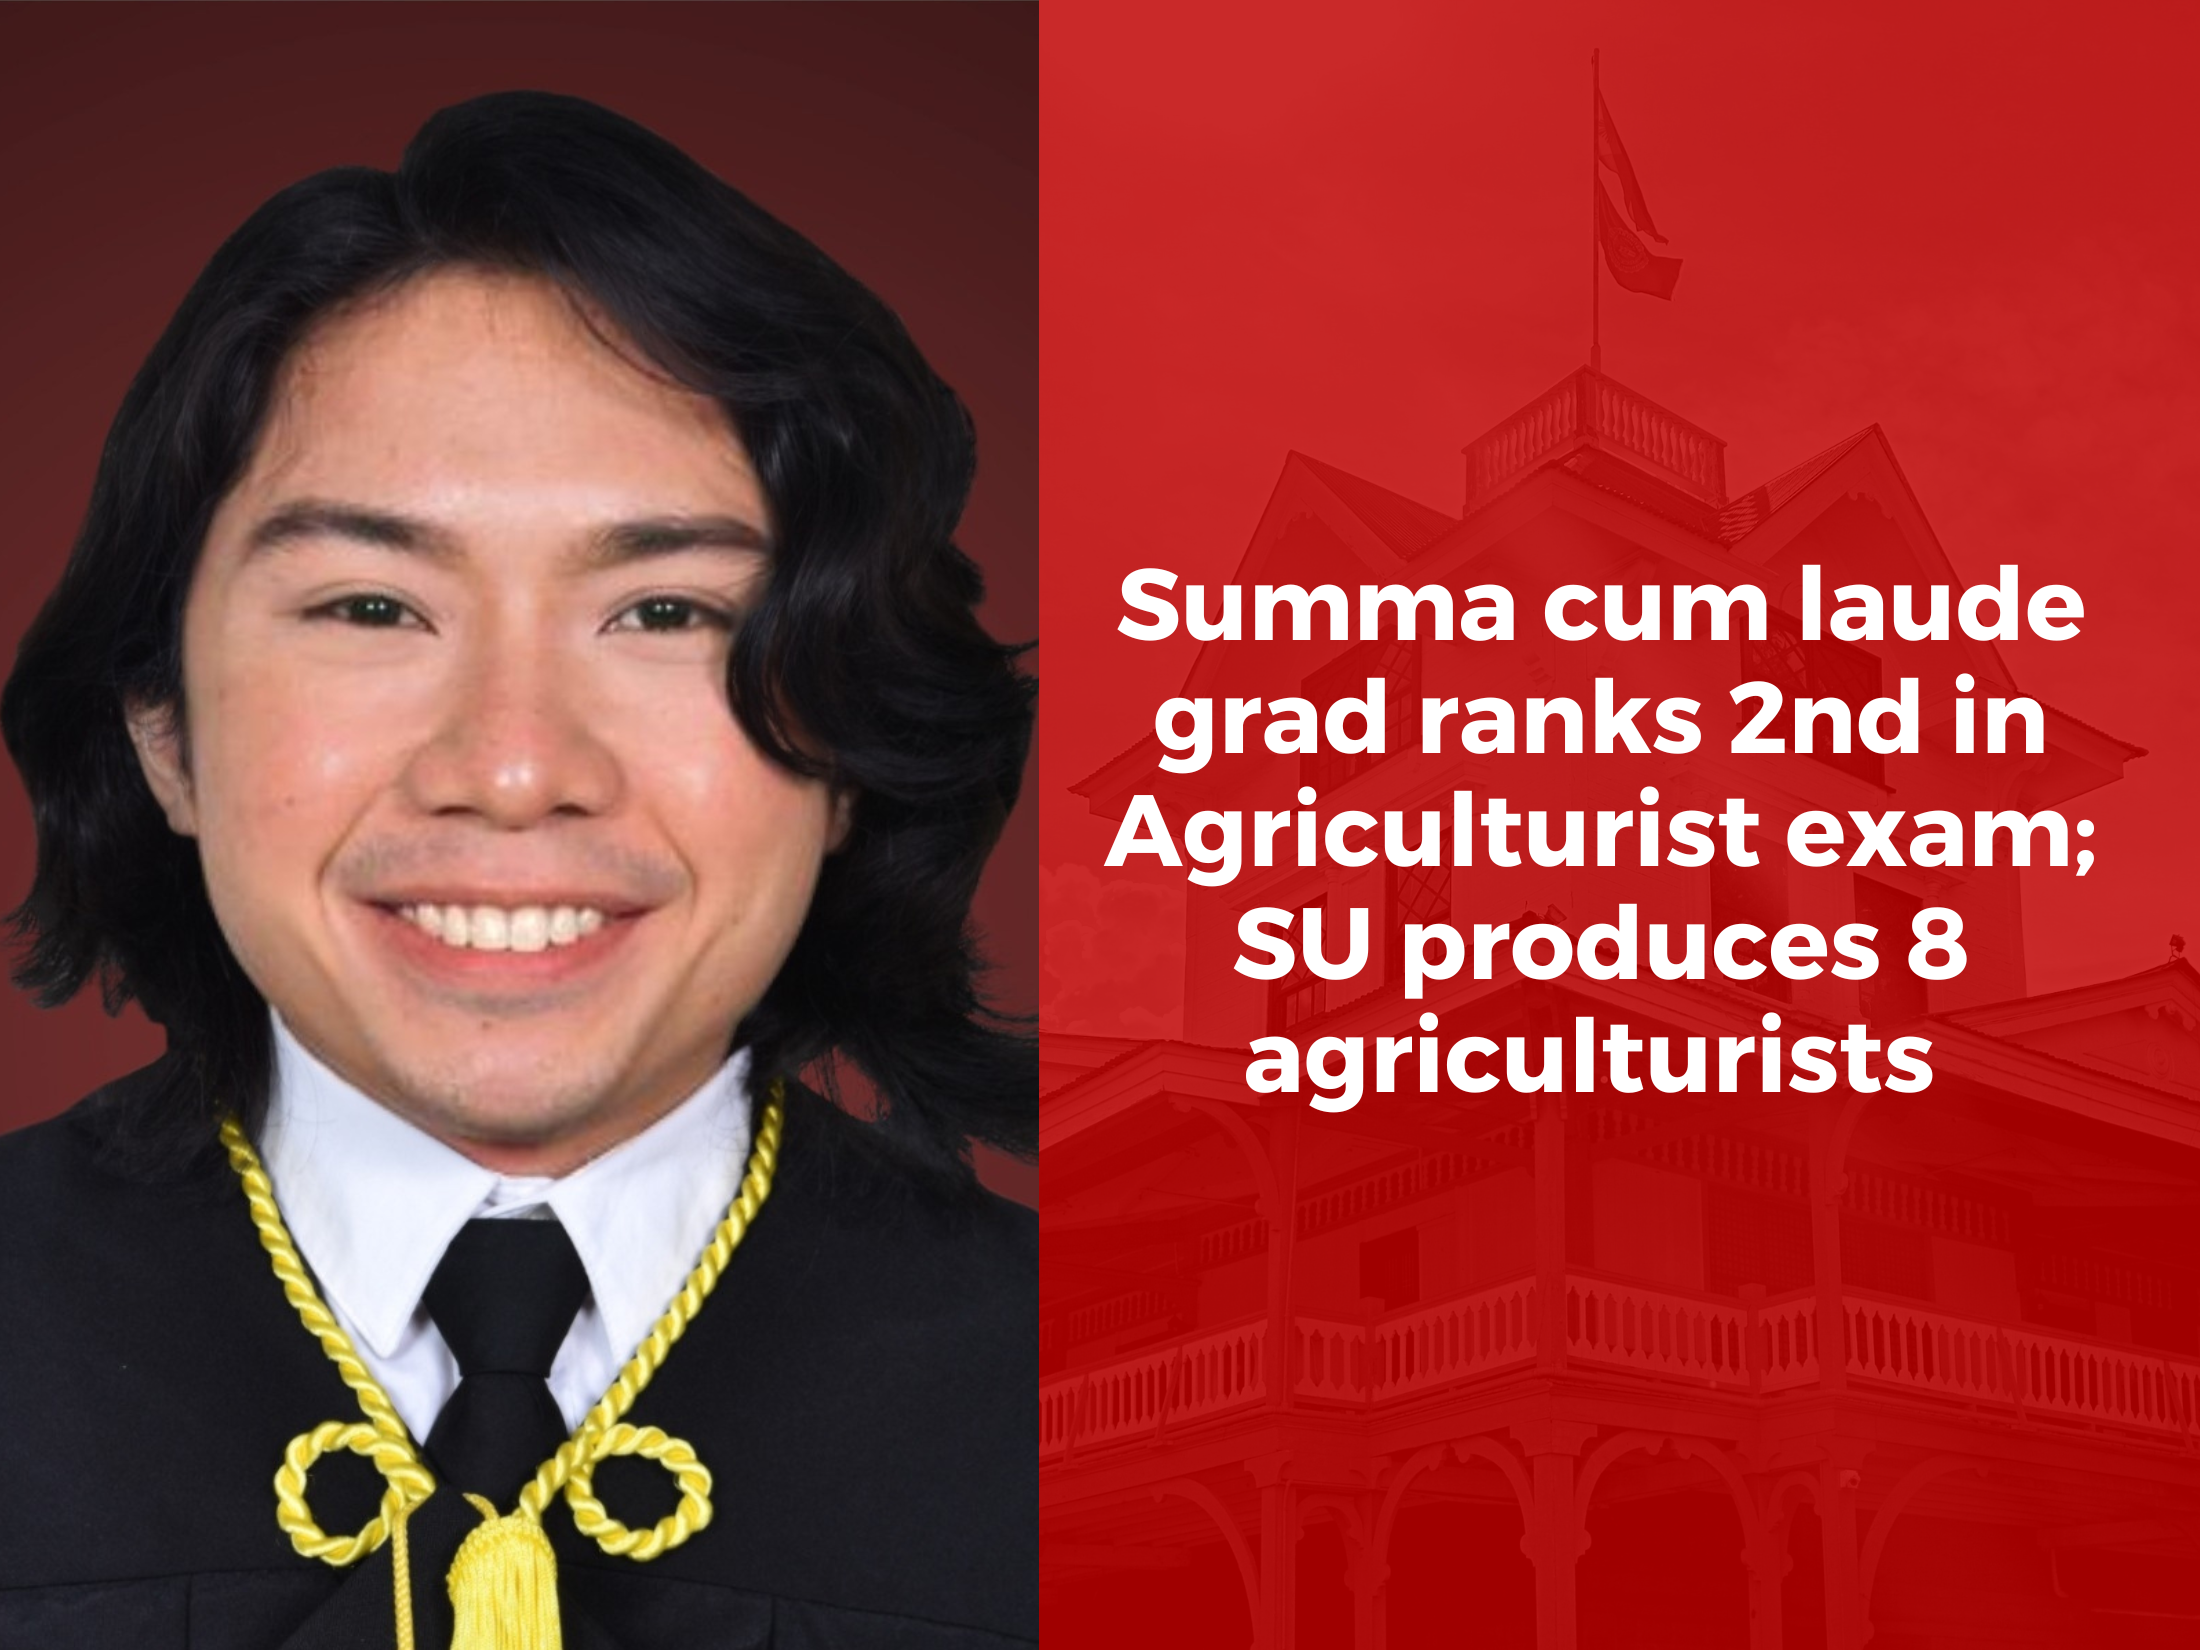 Summa cum laude grad ranks 2nd in Agriculturist exam; SU produces 8 agriculturists